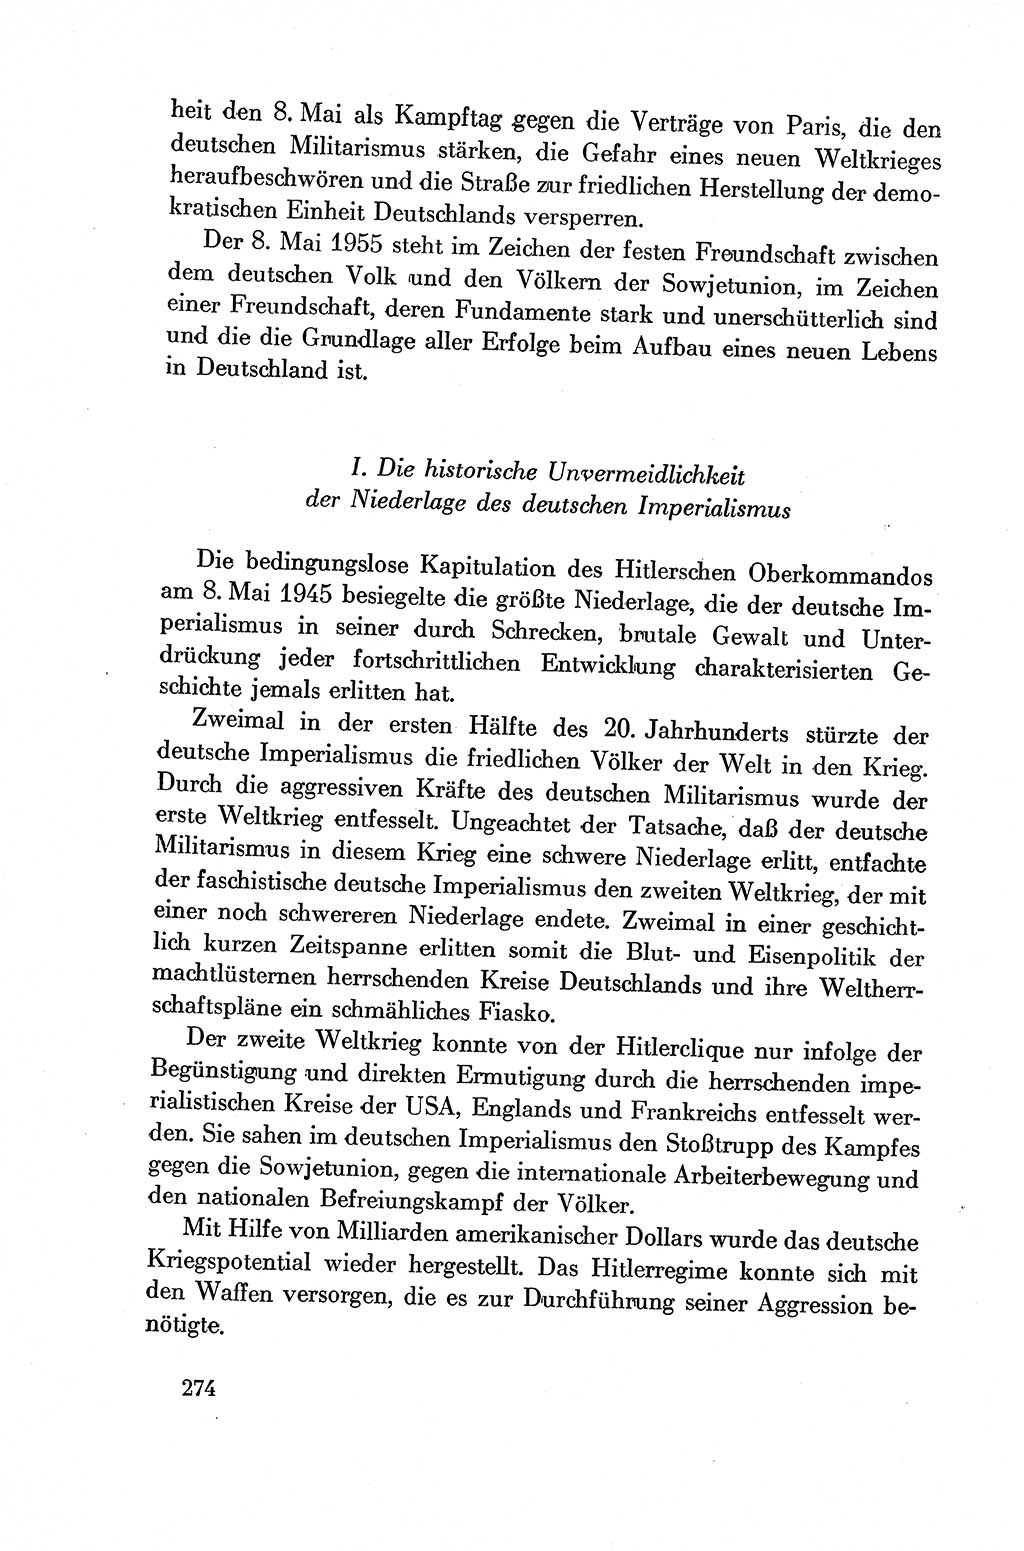 Dokumente der Sozialistischen Einheitspartei Deutschlands (SED) [Deutsche Demokratische Republik (DDR)] 1954-1955, Seite 274 (Dok. SED DDR 1954-1955, S. 274)